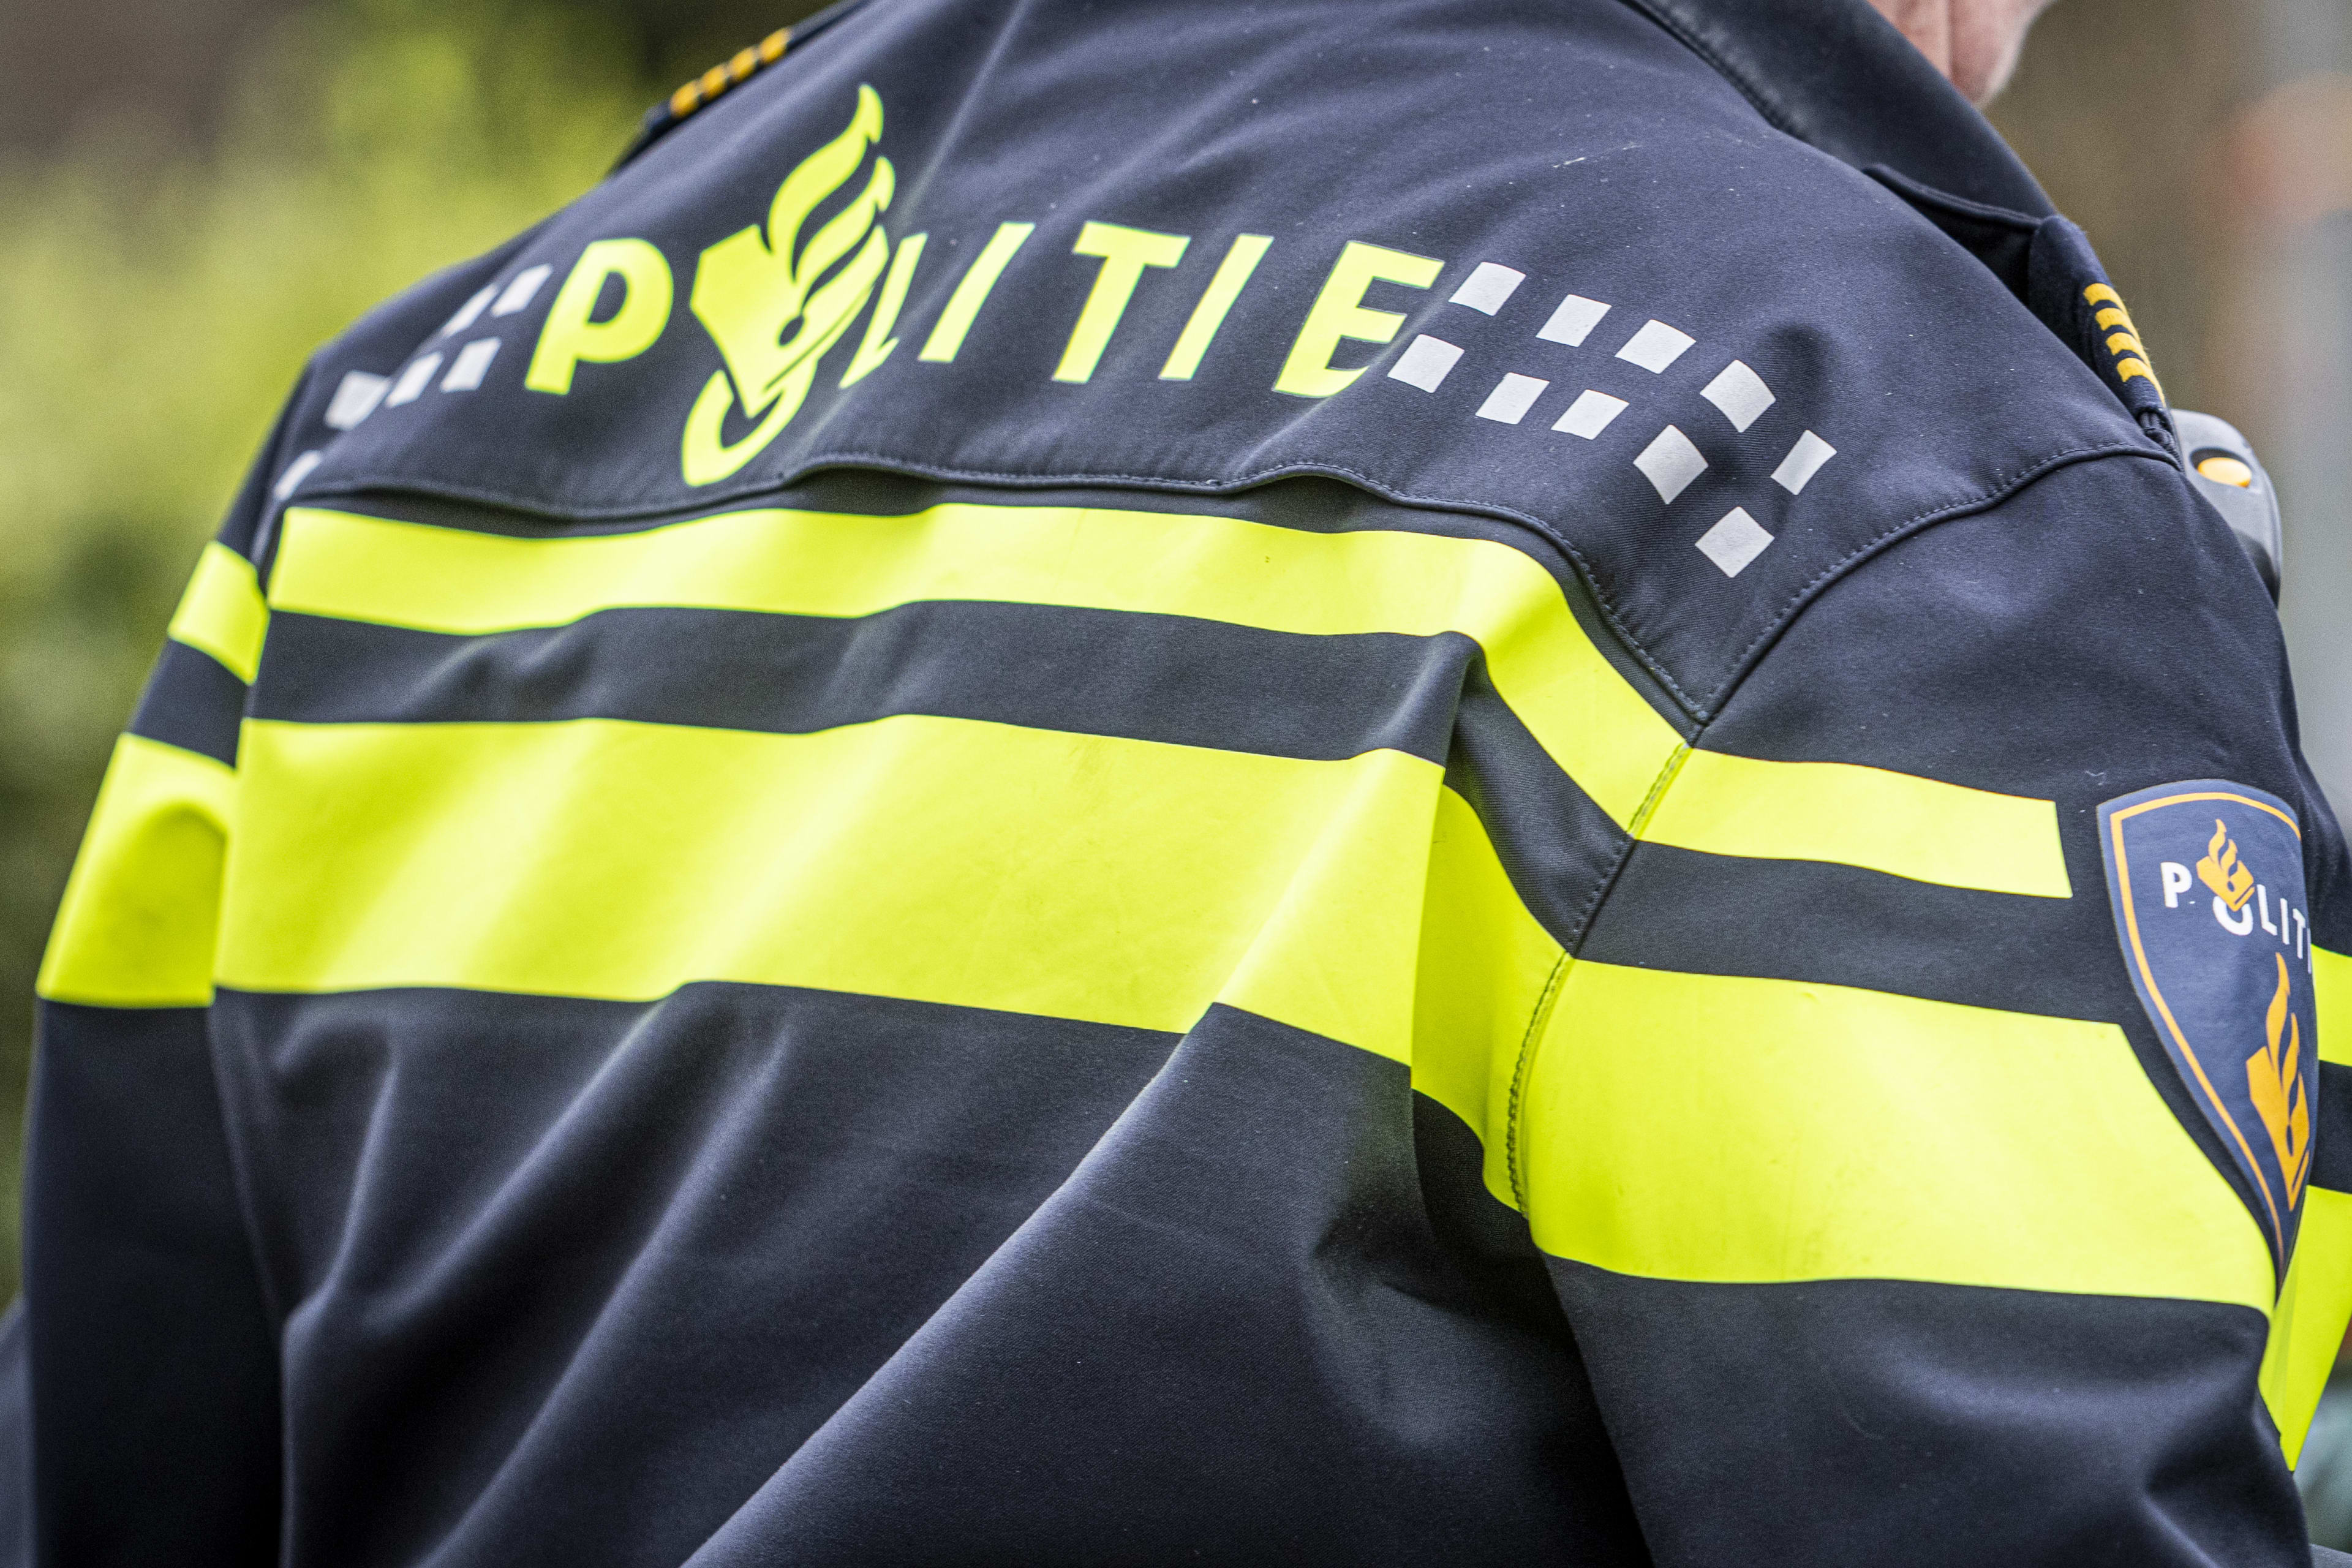 Zoektocht in Veenendaal naar ruim drie weken vermiste Kees (56)